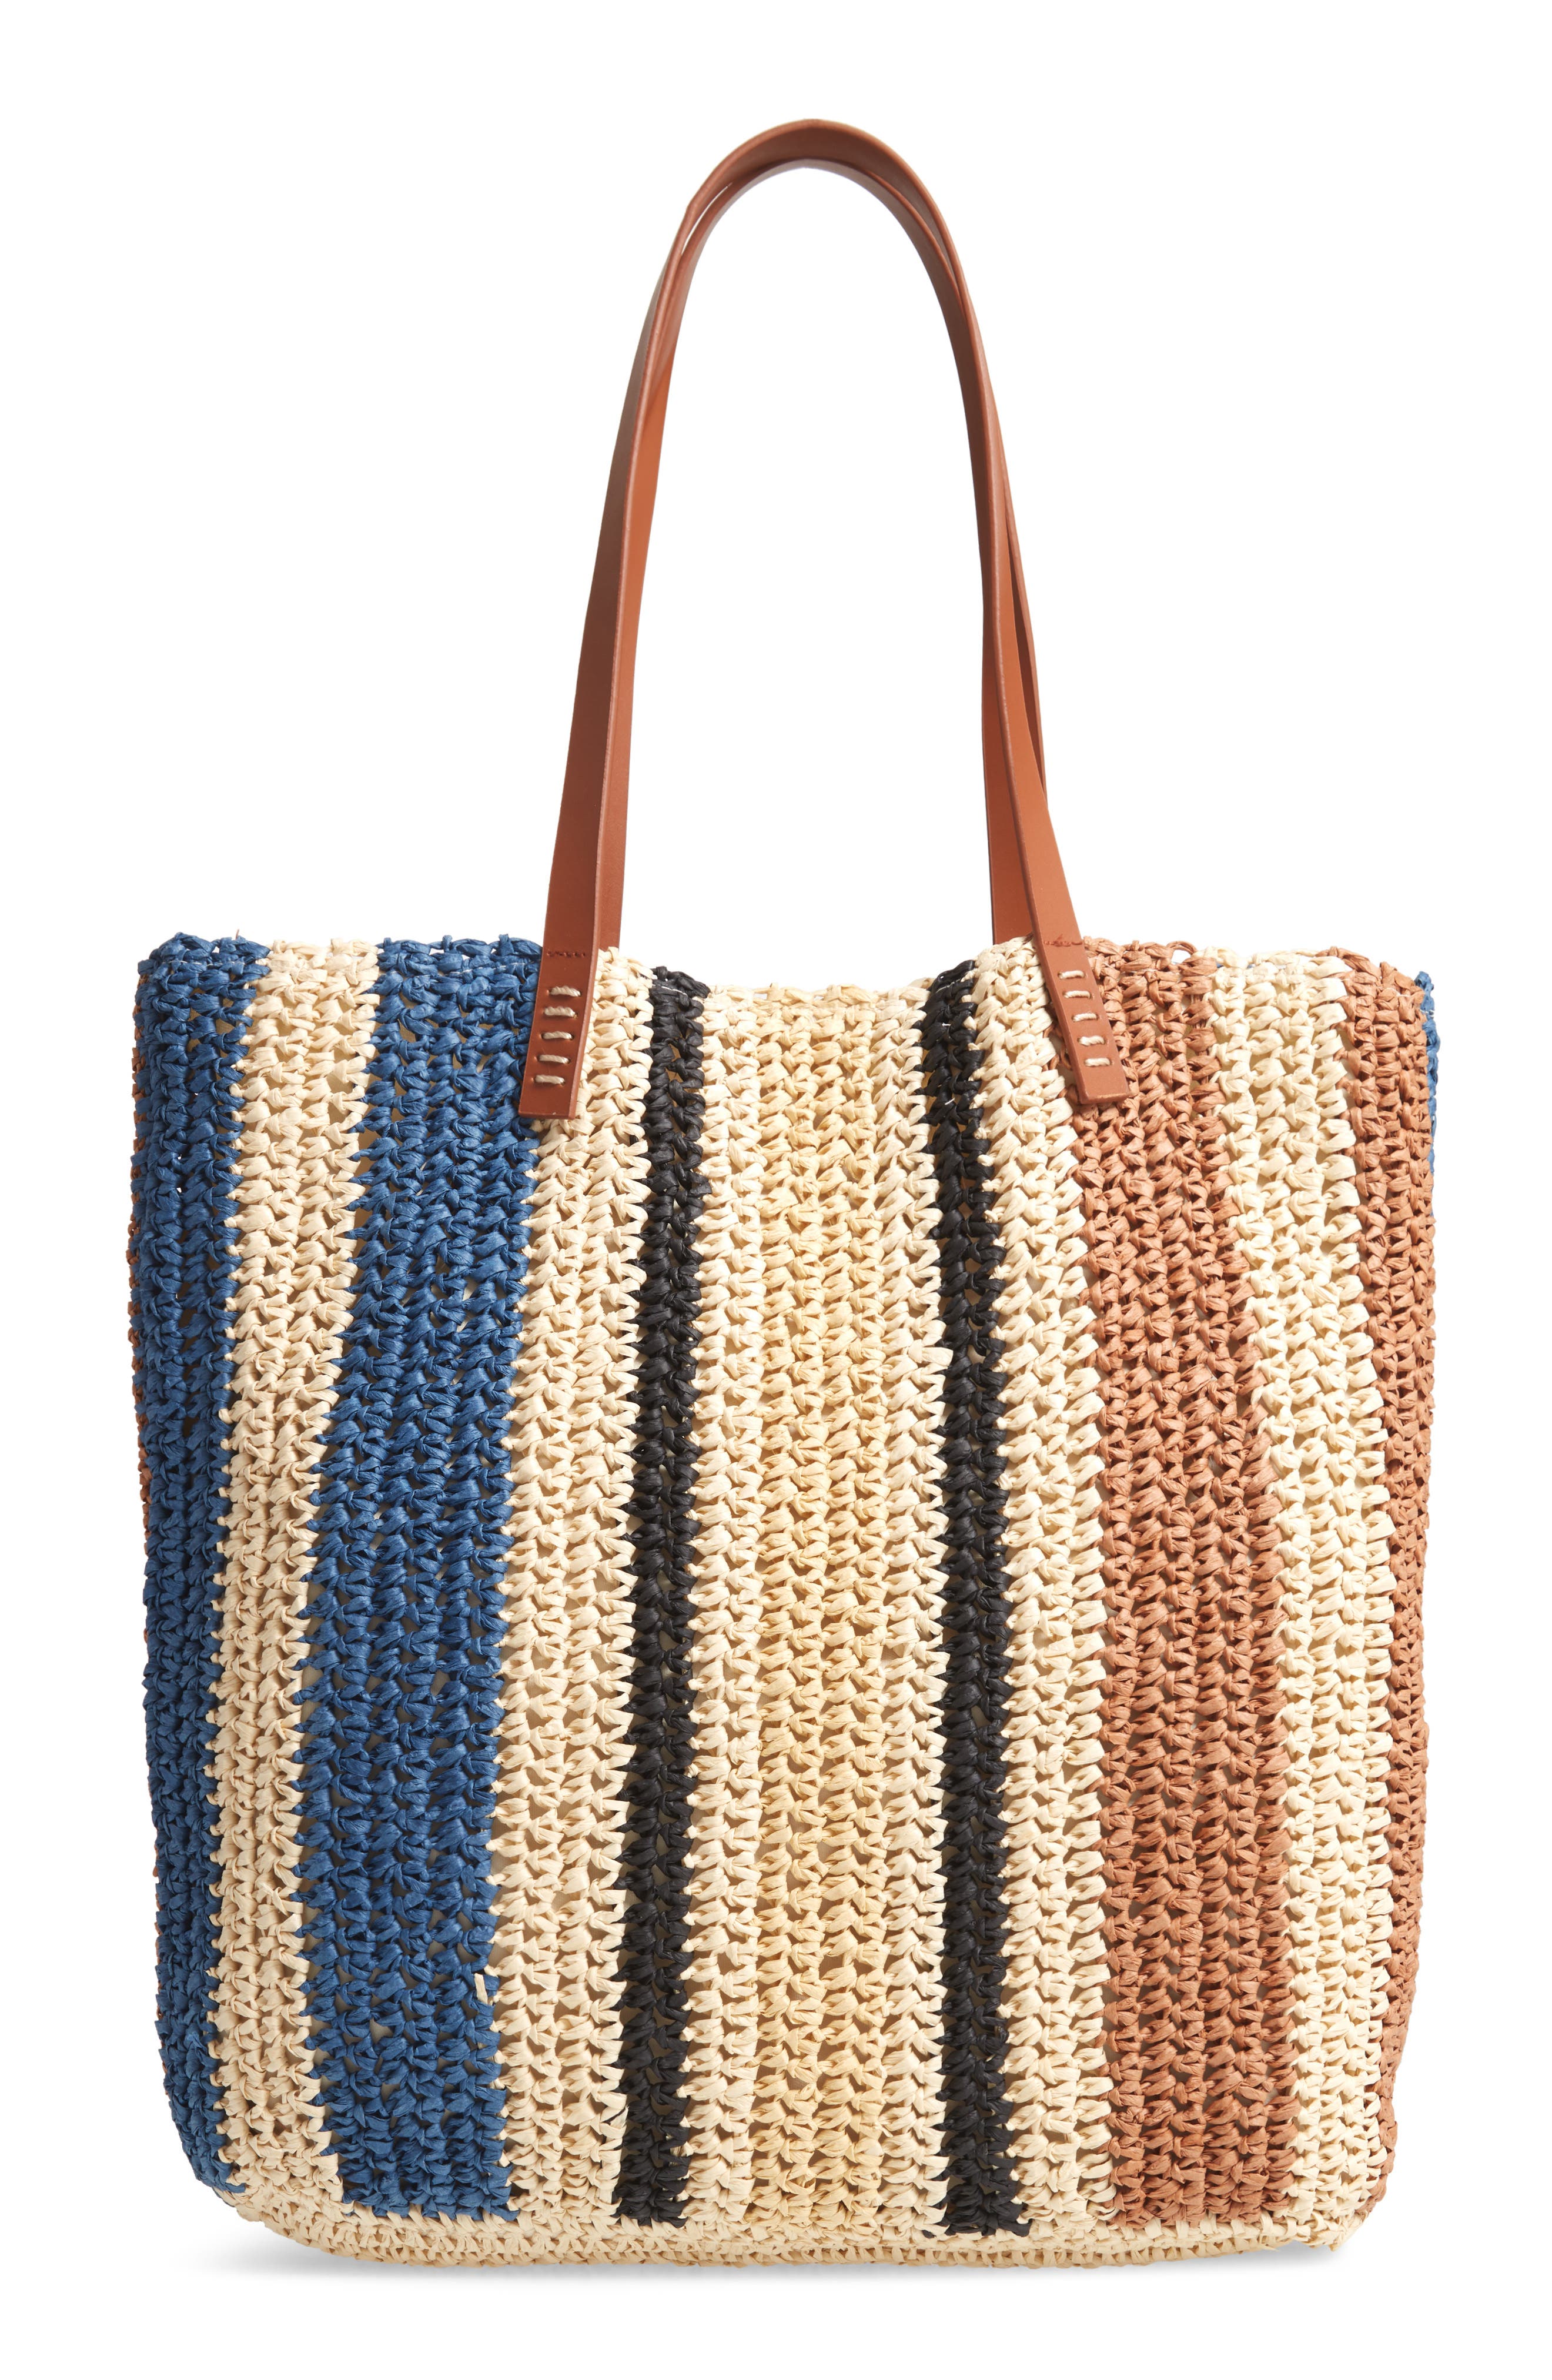 Beach Bag Womens Canvas Summer Tote Bags Striped Nautical Shopper 46 x 32 x 13 cms Closure Magnetic Clasp Airee Fairee